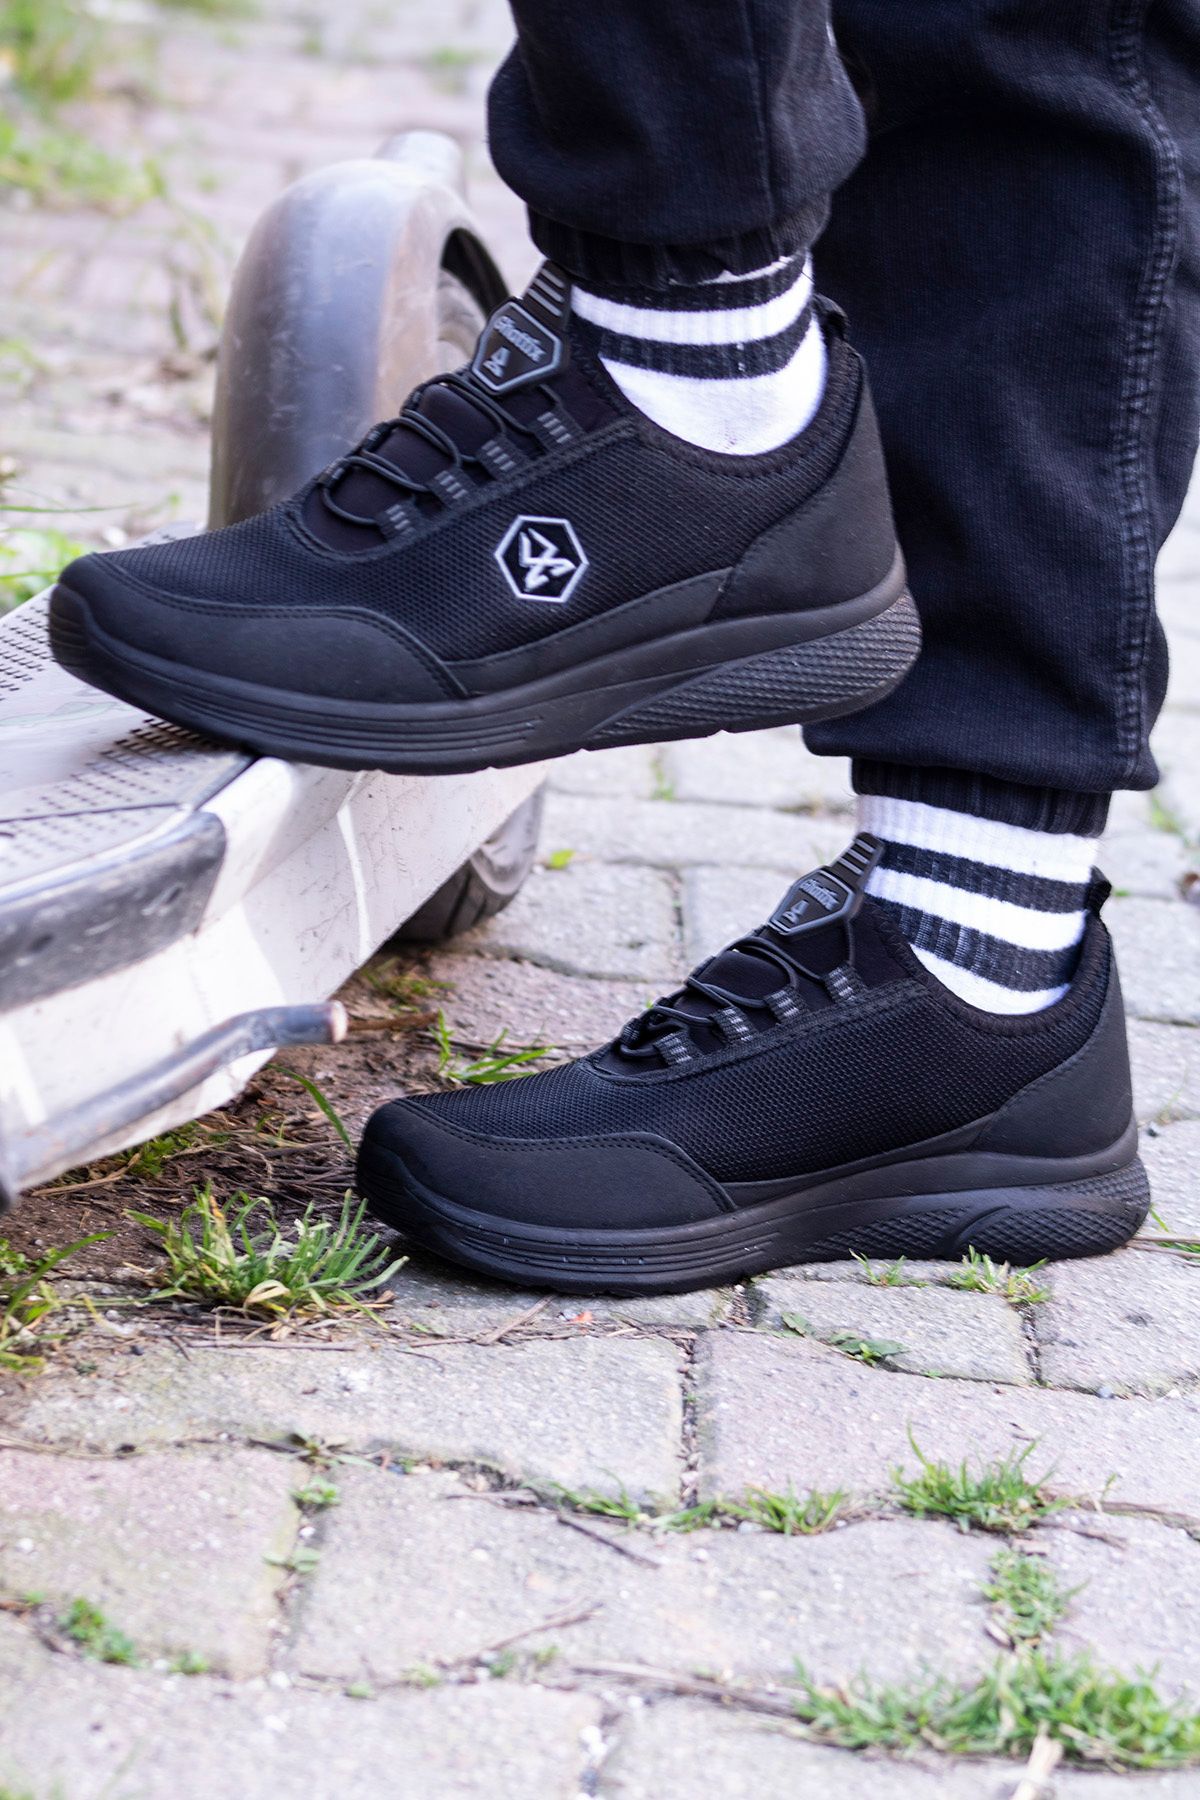 OXİ Oxi Erkek Günlük Bağcıksız Spor Ayakkabı Tak Çıkar Likralı Hafif Rahat Esnek